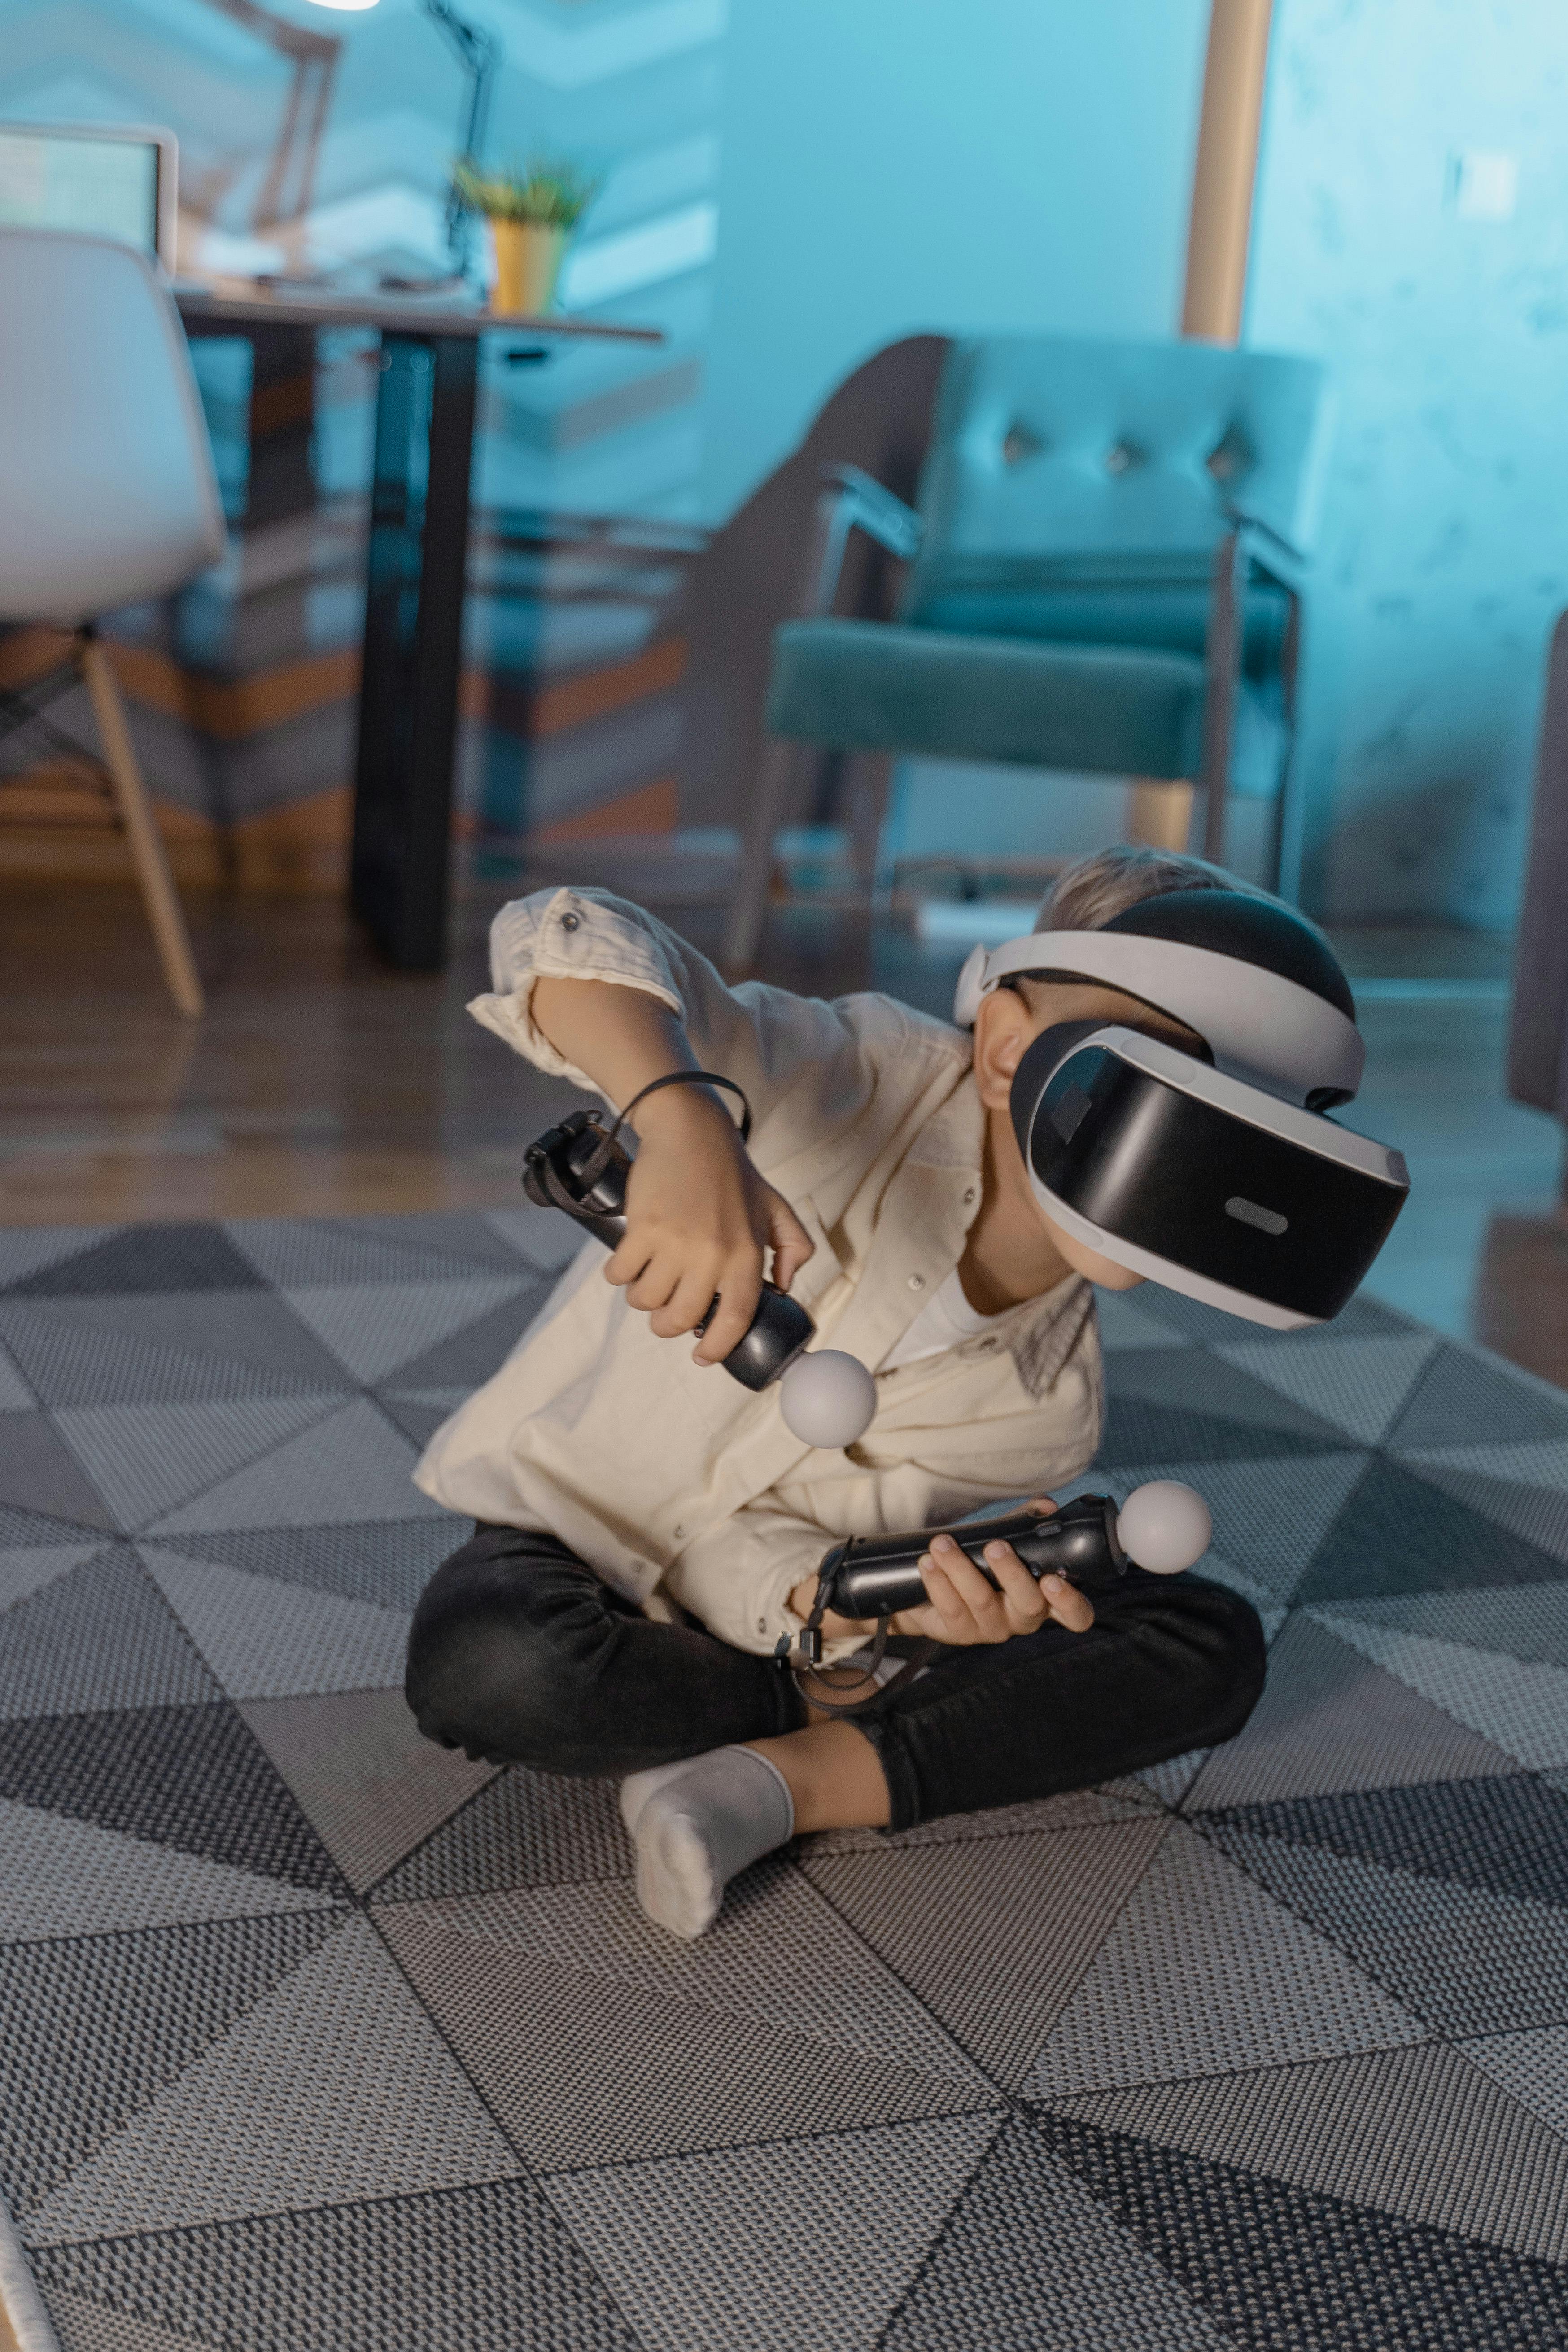 a boy playing a virtual reality game